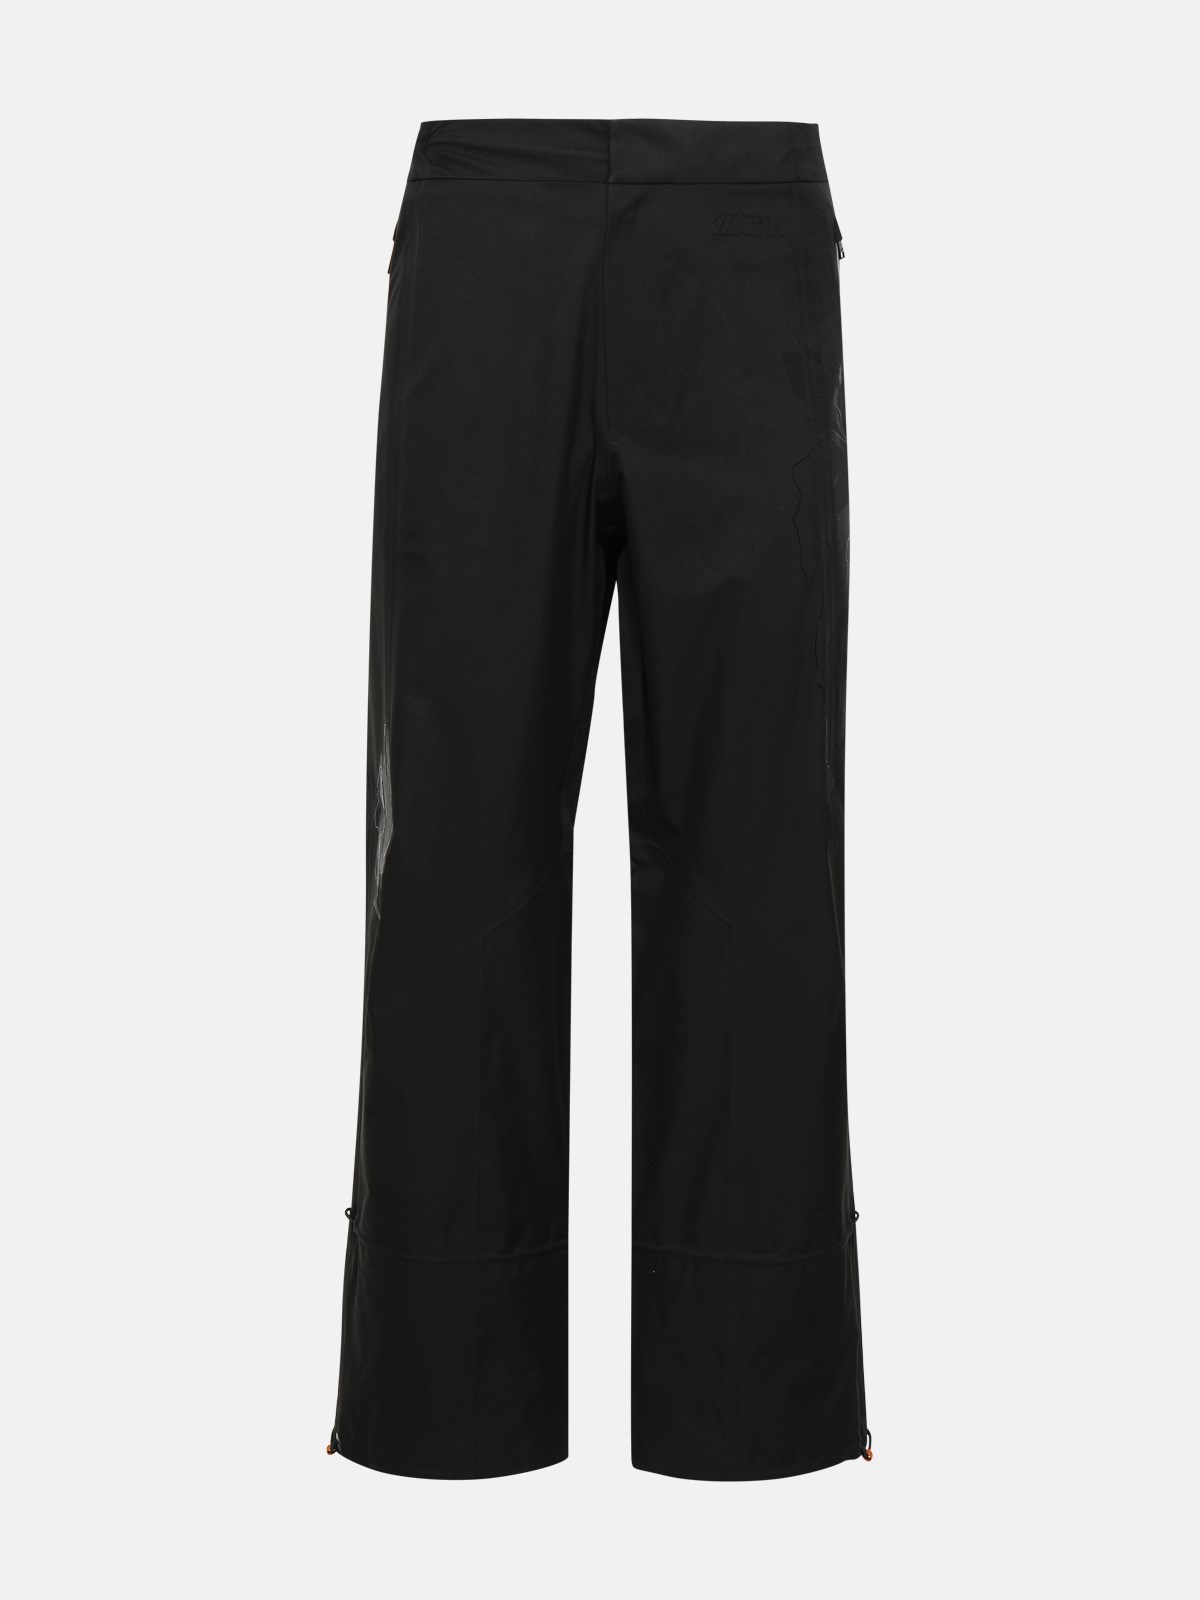 Zegna Black Nylon Tech Trousers